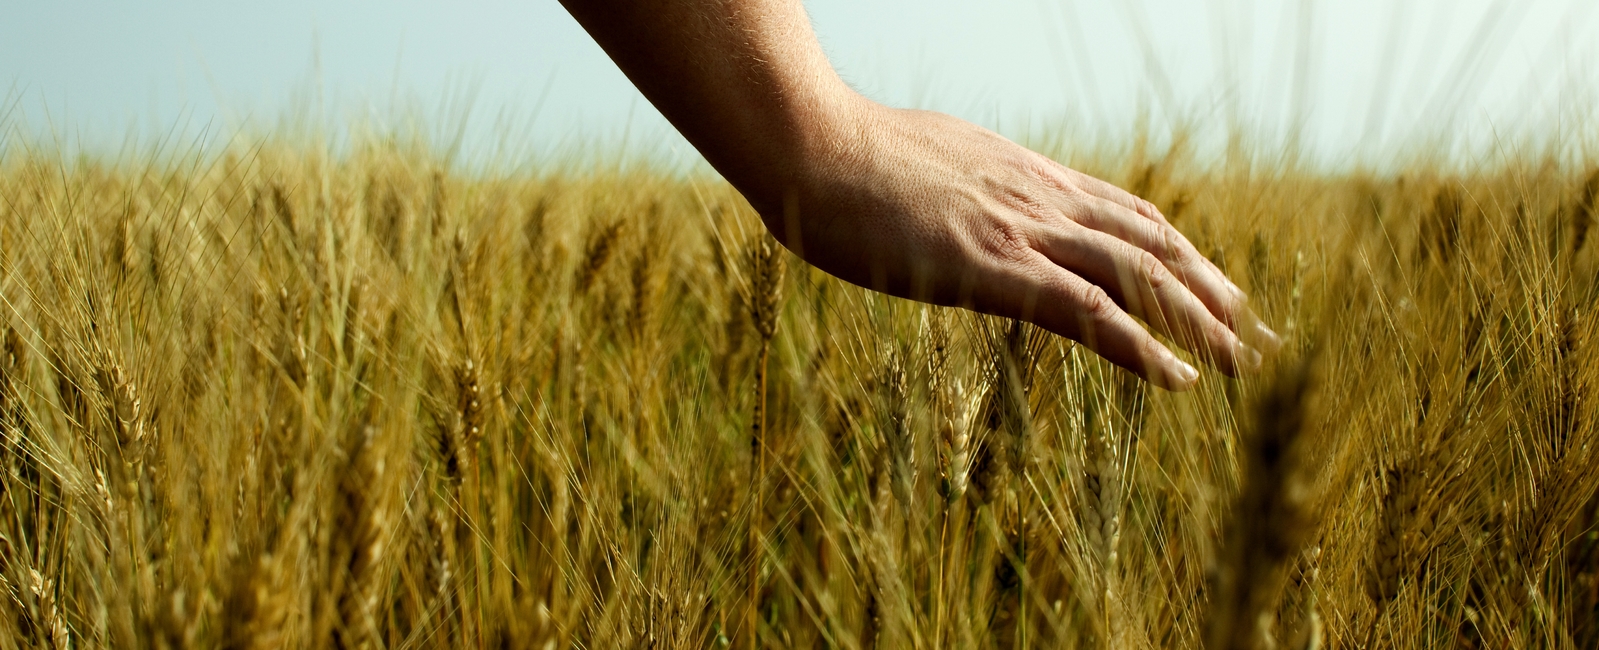 En hand som stryker över moget korn